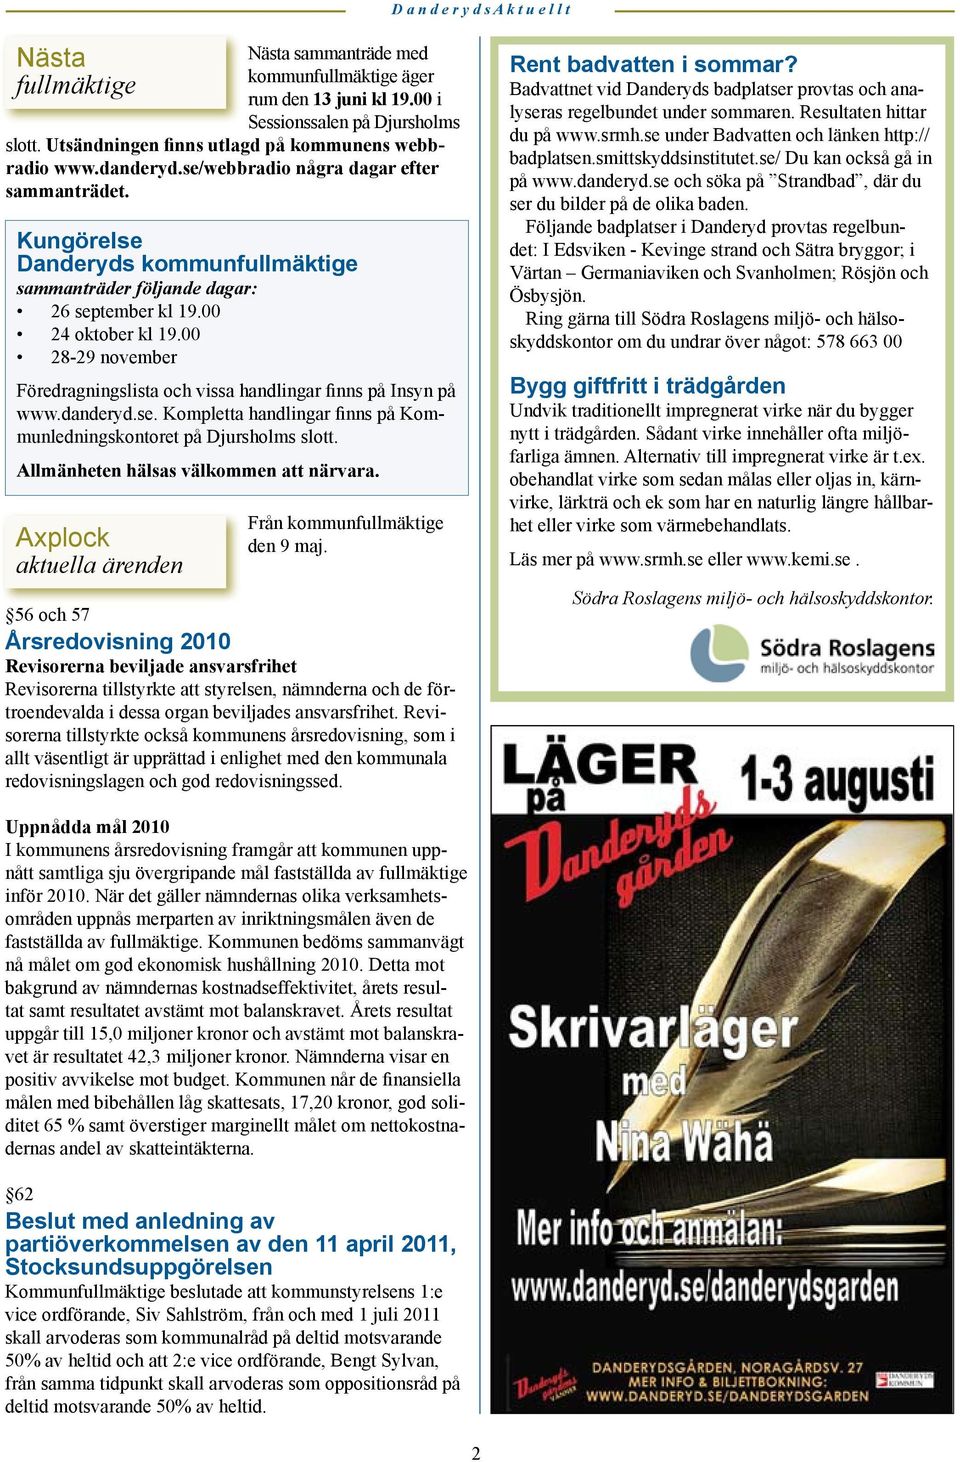 00 24 oktober kl 19.00 28-29 november Föredragningslista och vissa handlingar finns på Insyn på www.danderyd.se. Kompletta handlingar finns på Kommunledningskontoret på Djursholms slott.